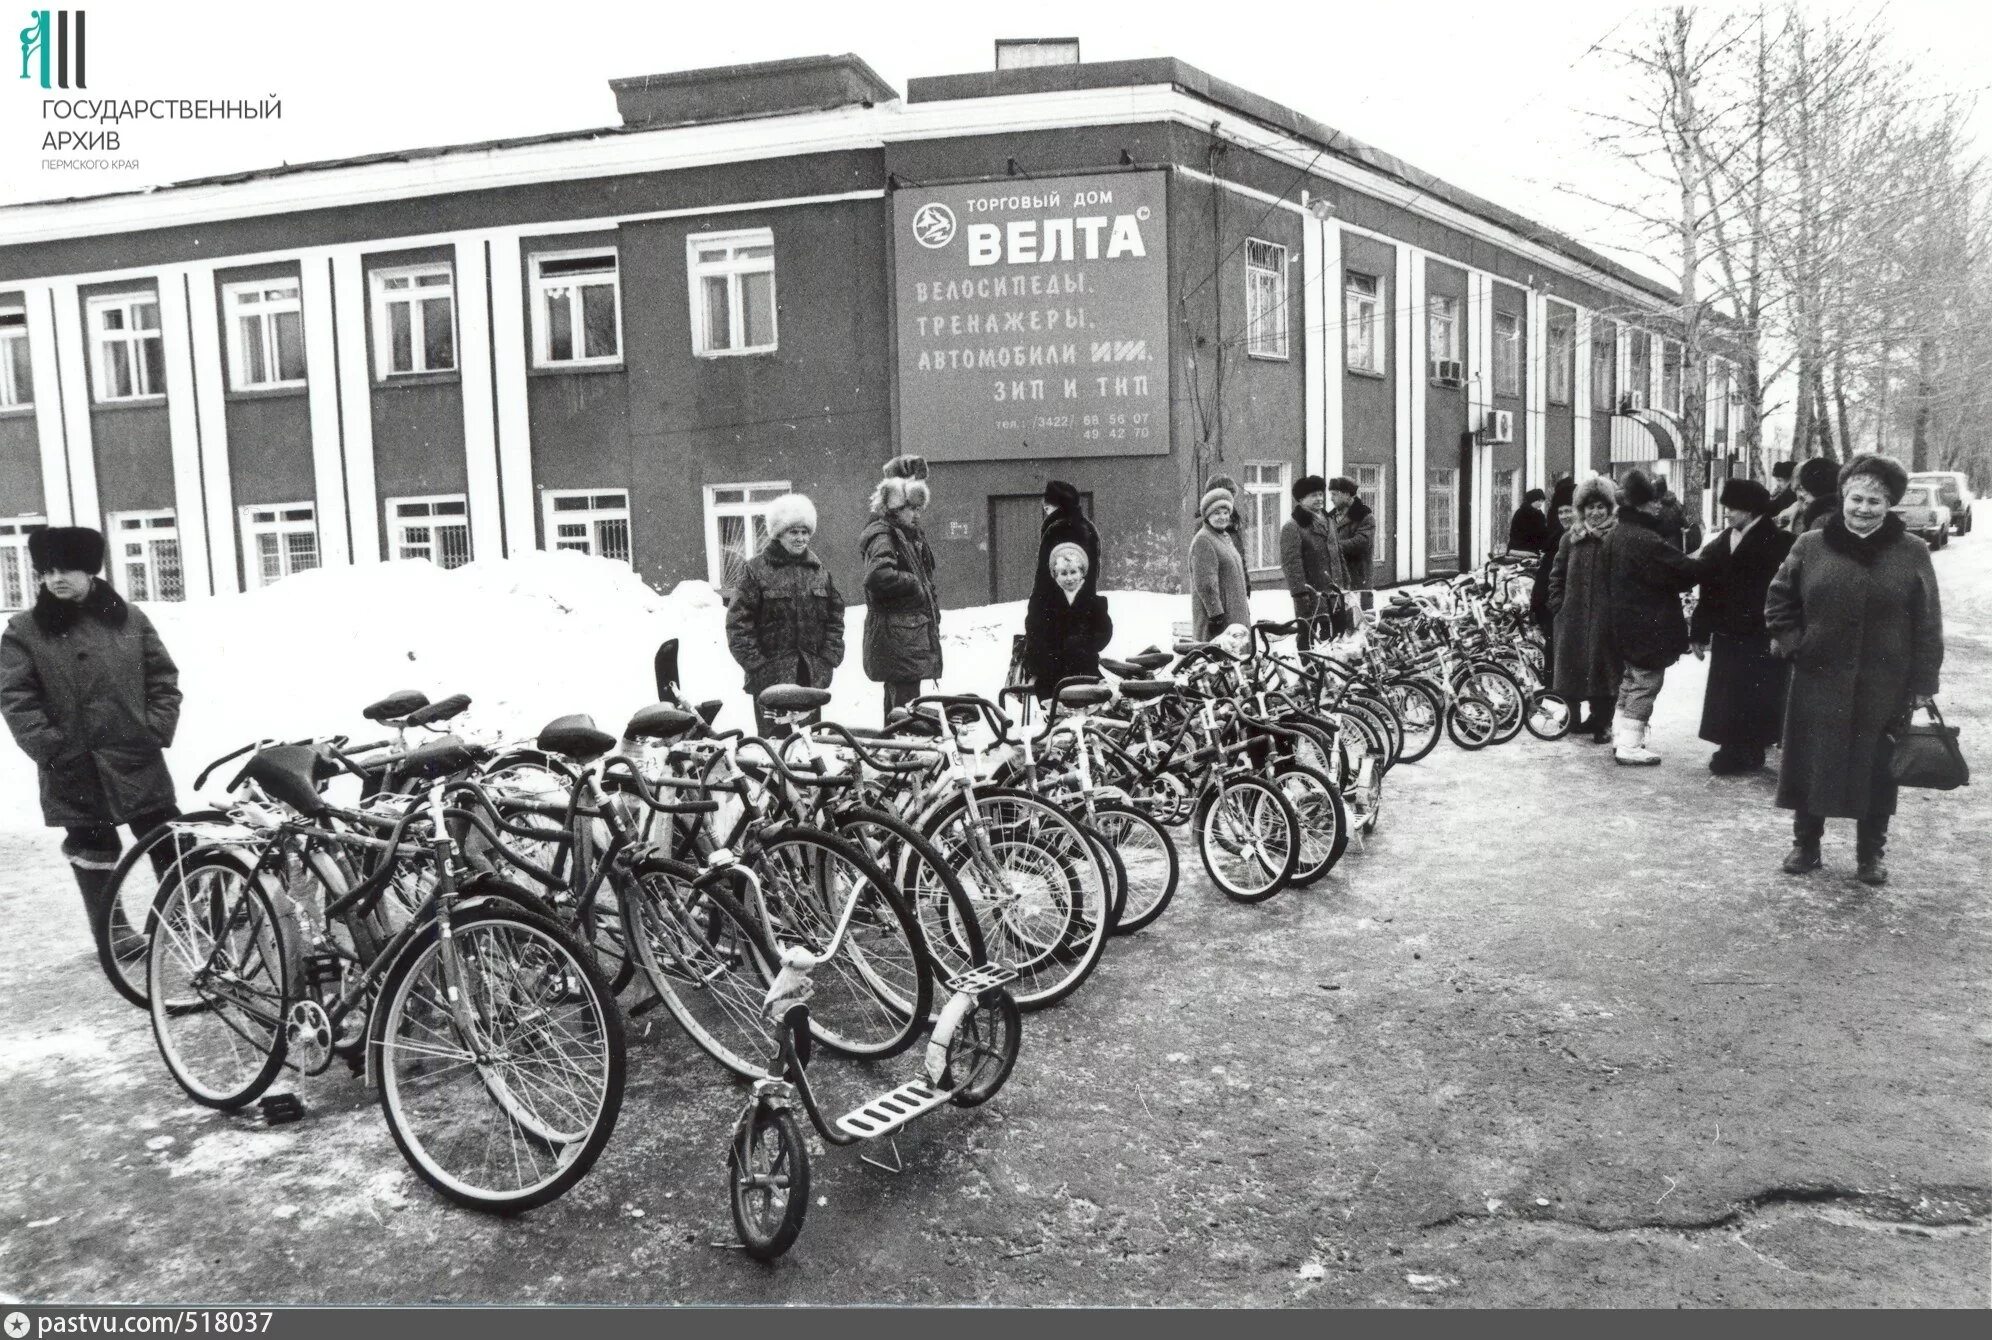 1997 года архив. Пермский велосипедный завод Велта. Велта завод велосипедов. Пермский машиностроительный завод имени Октябрьской революции. Велосипед Велта СССР.